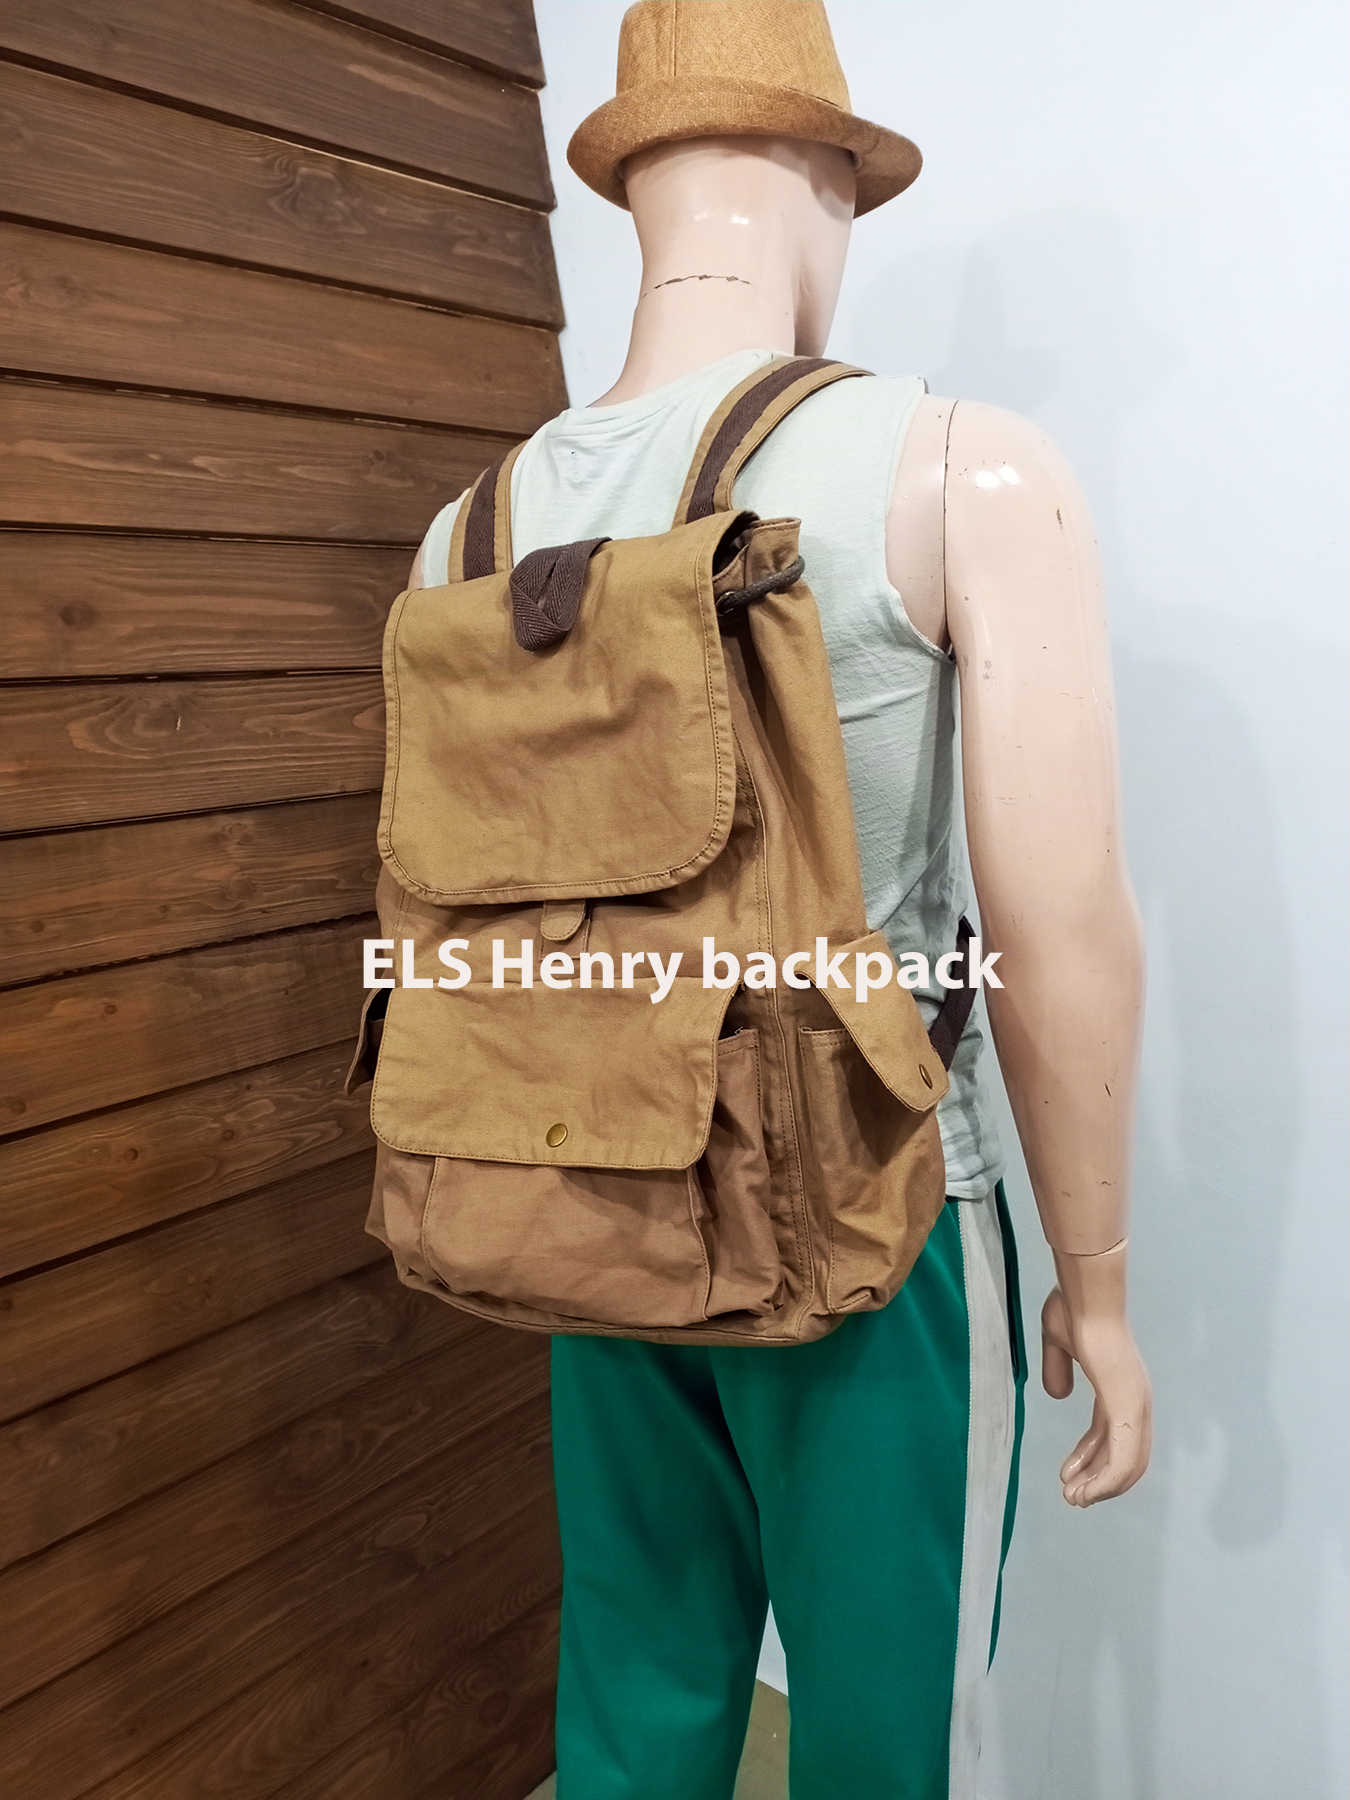 ELS Henry backpack 1 copy.jpg